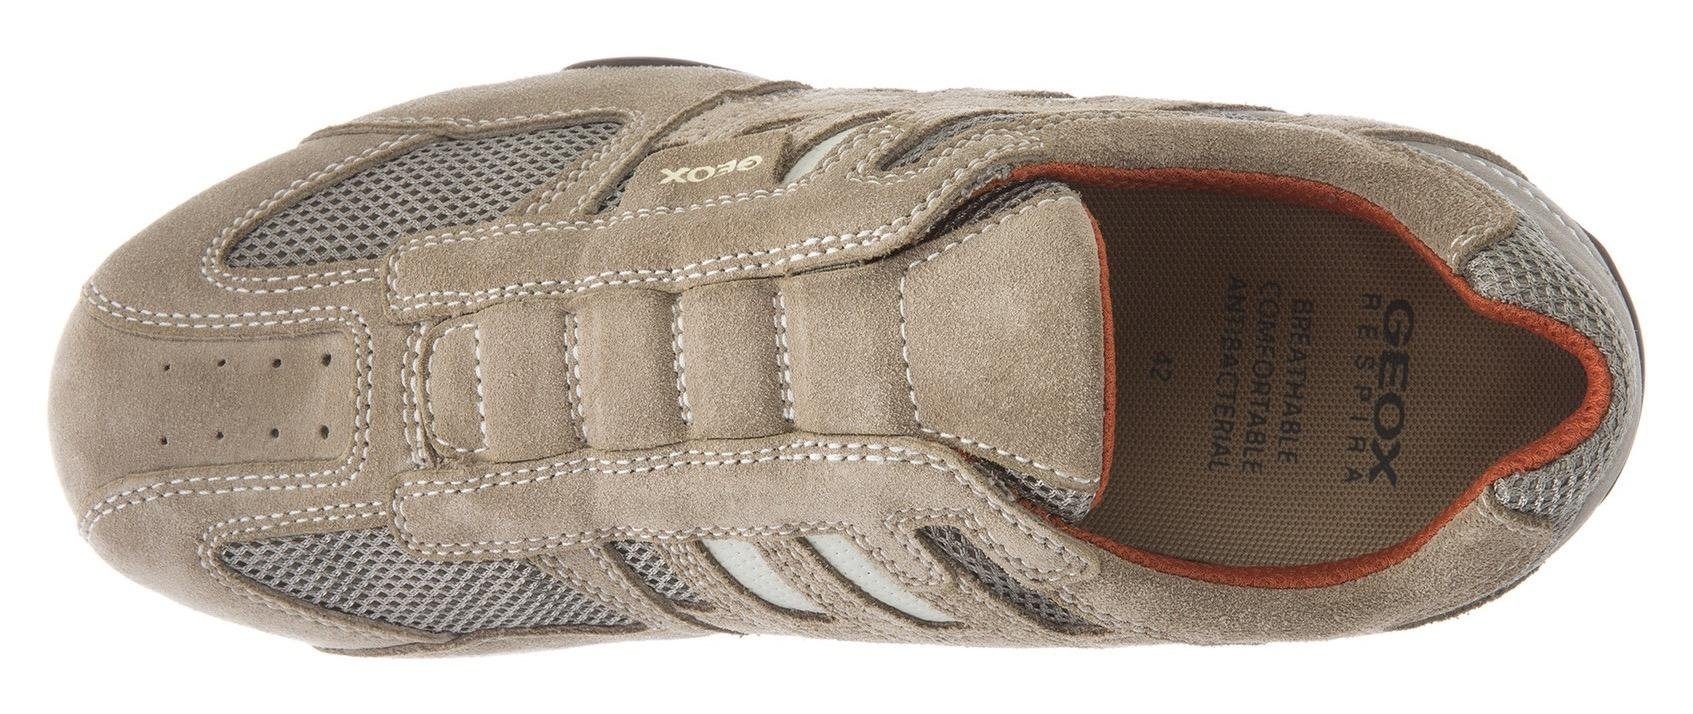 Membrane mit mit und Geox modischen beige-orange Sneaker Slip-On Spezial UOMO SNAKE Ziernähten Geox